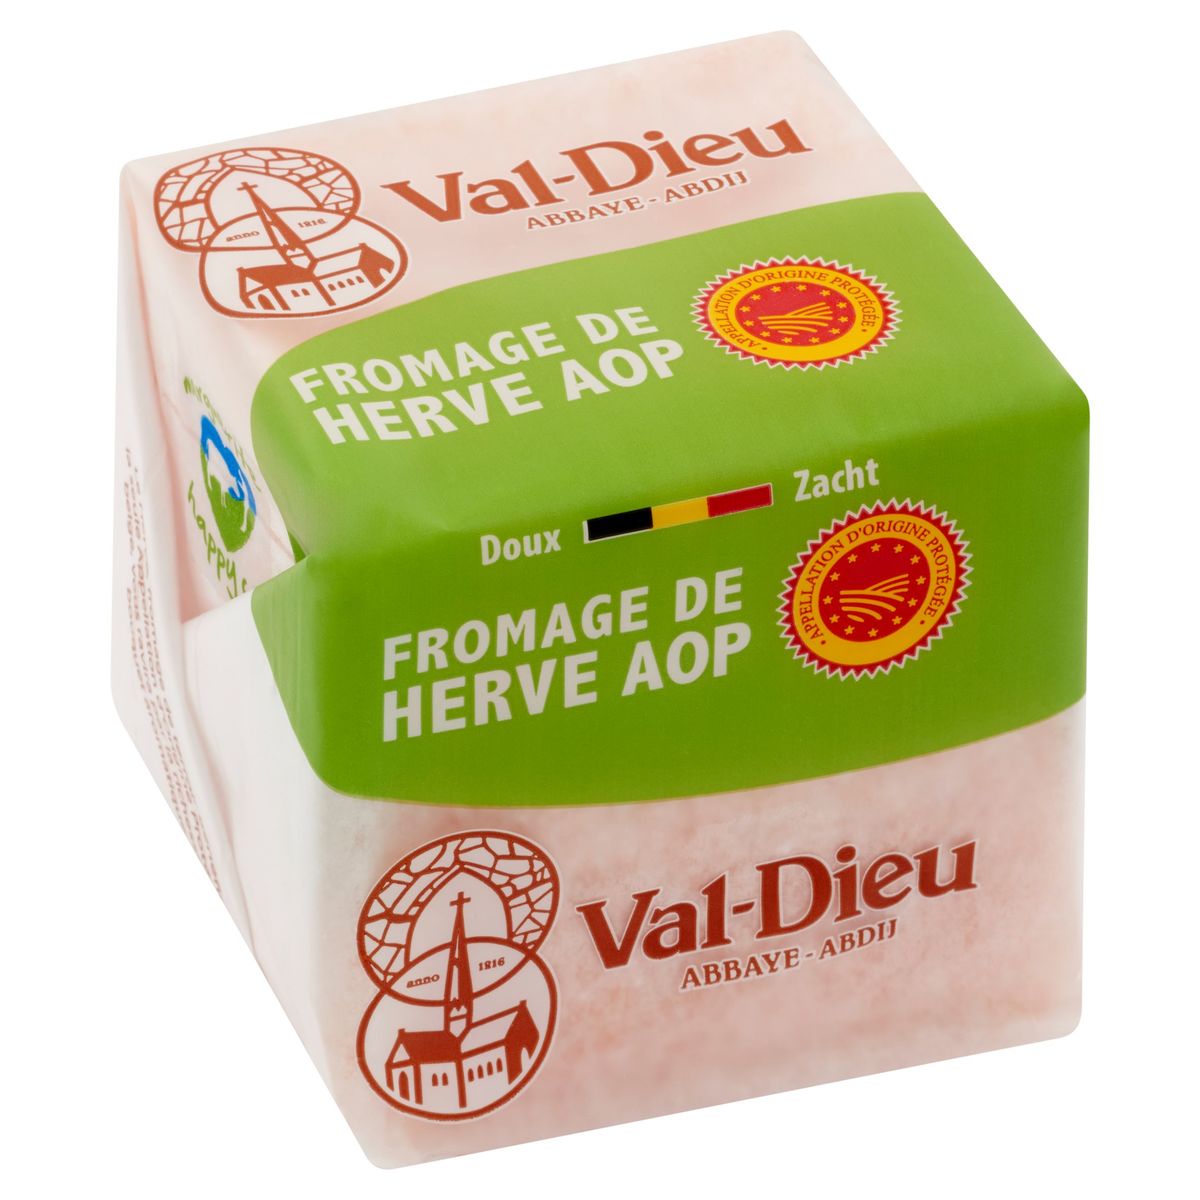 Herve-Société Fromage de Herve AOP Zacht 200 g